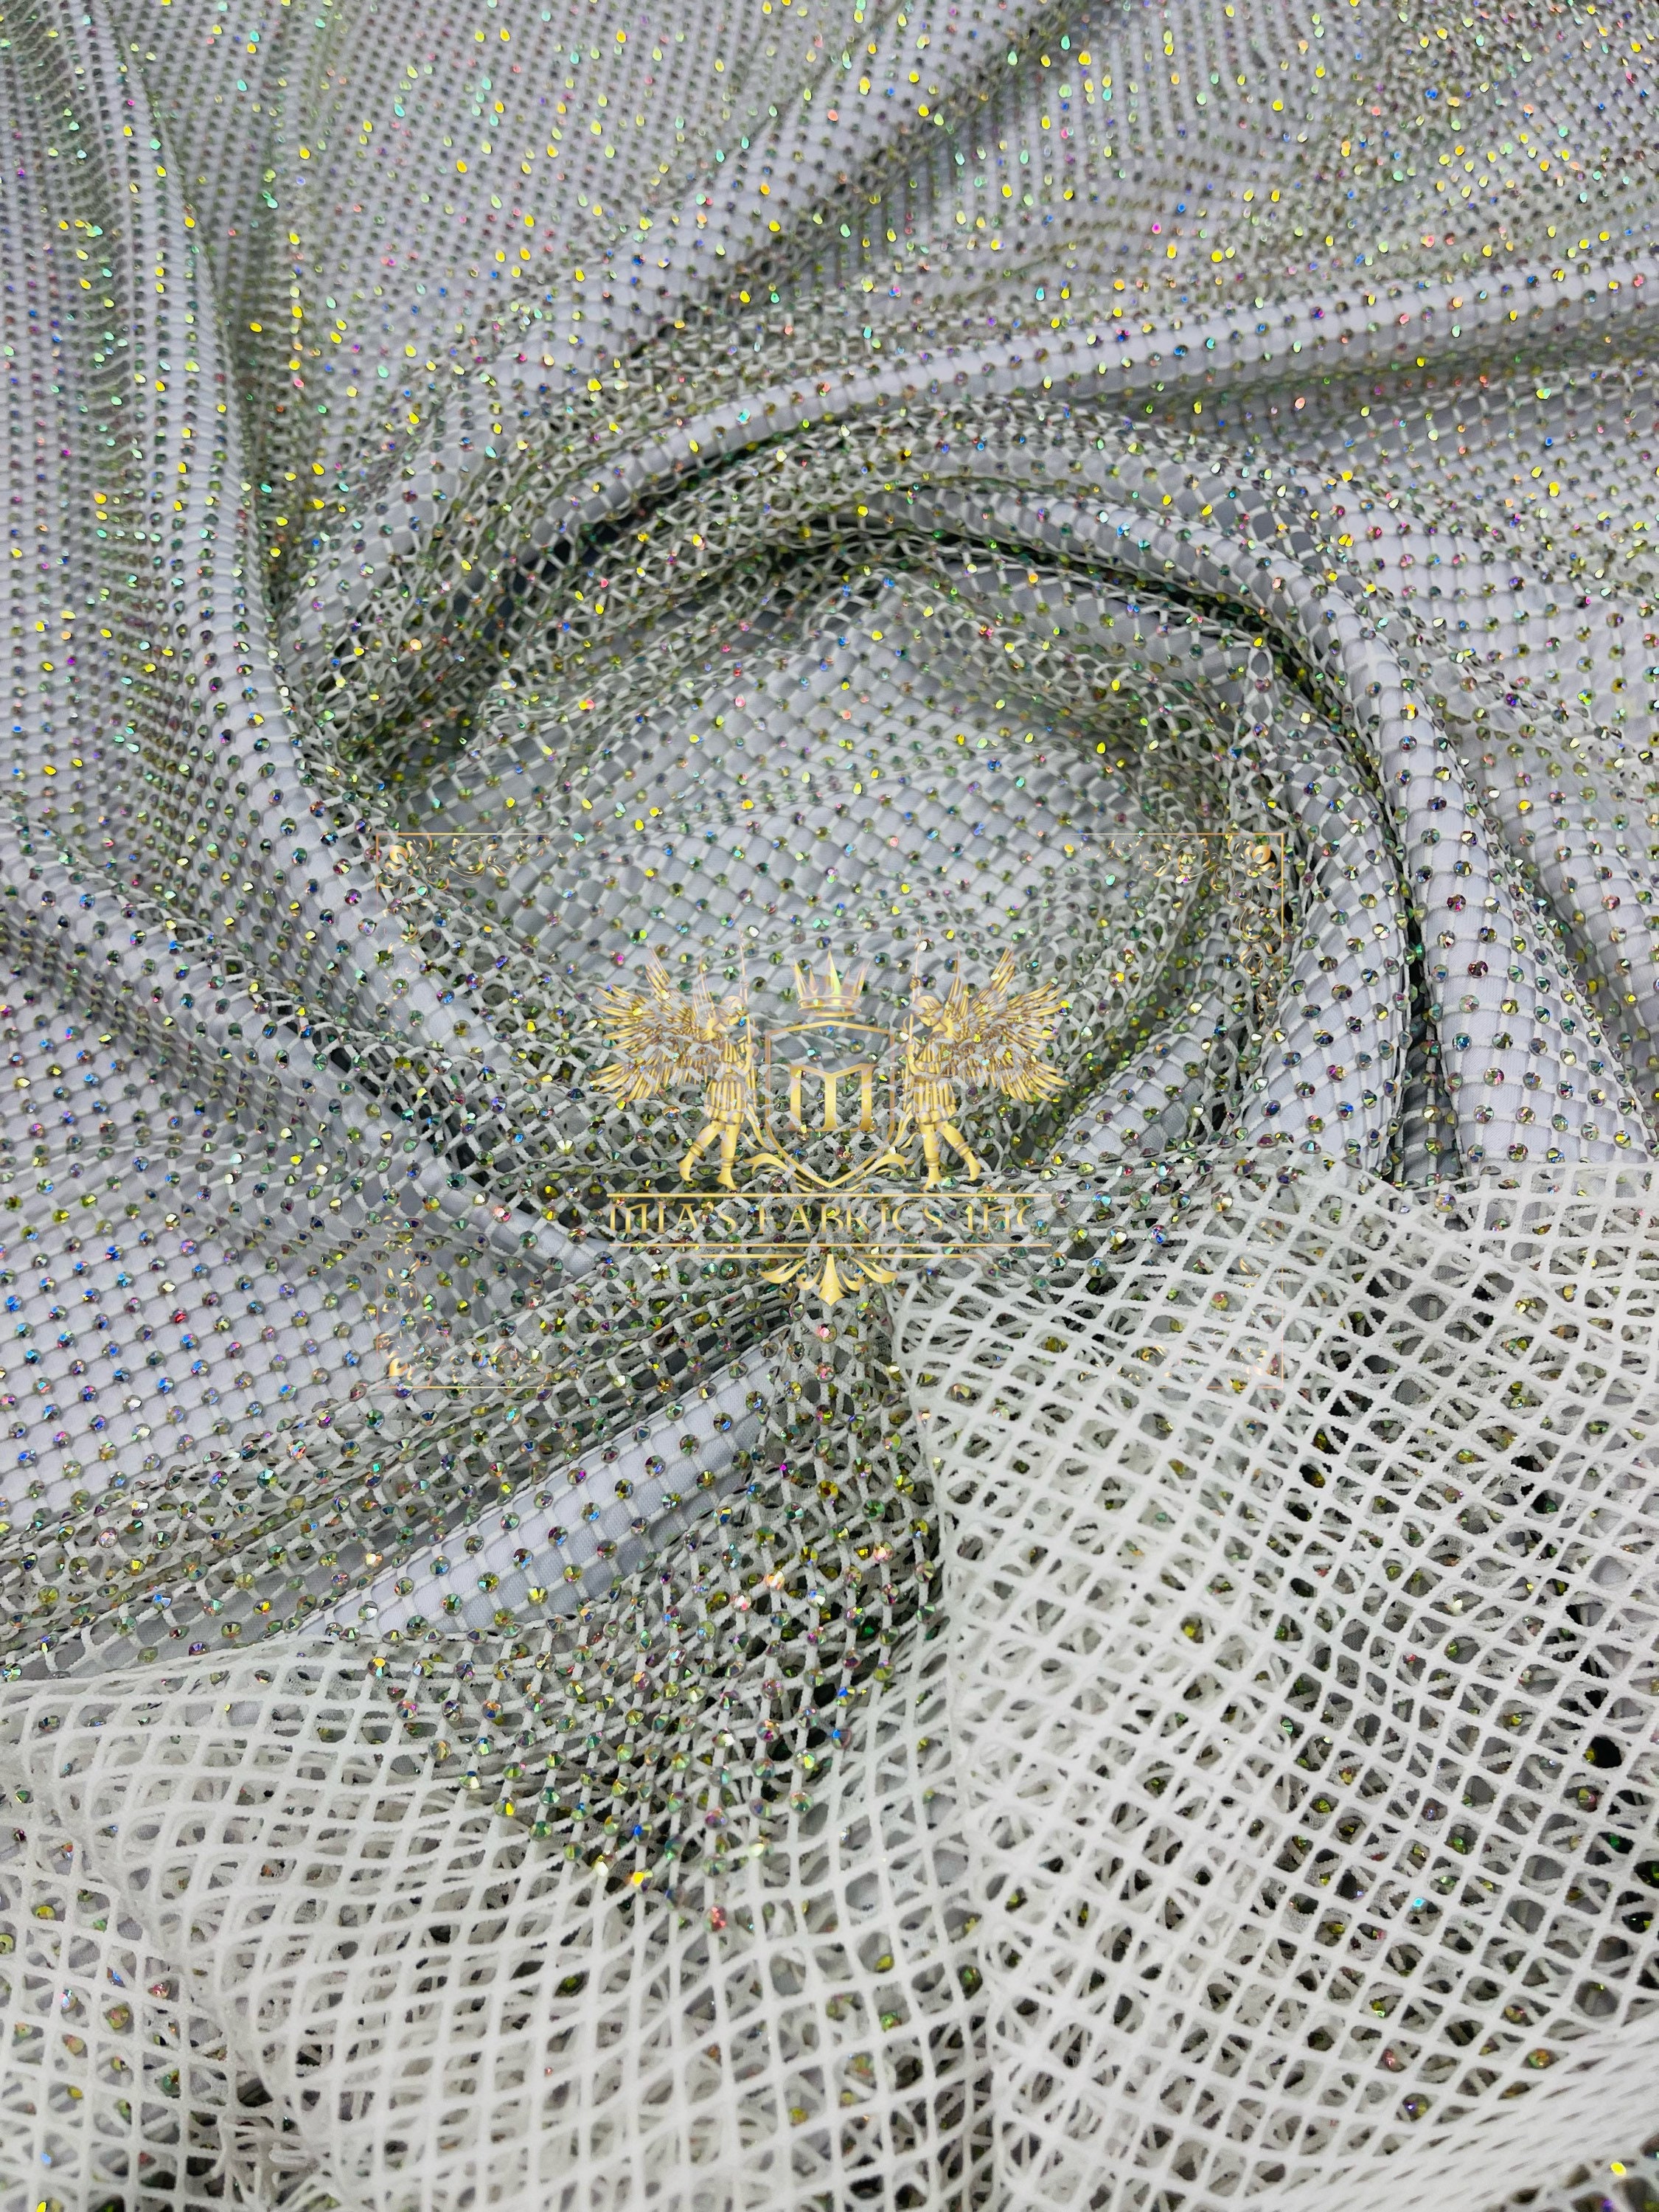 Fishnet Iridescent Rhinestones Fabric - White - Spandex Fabric Fish Ne